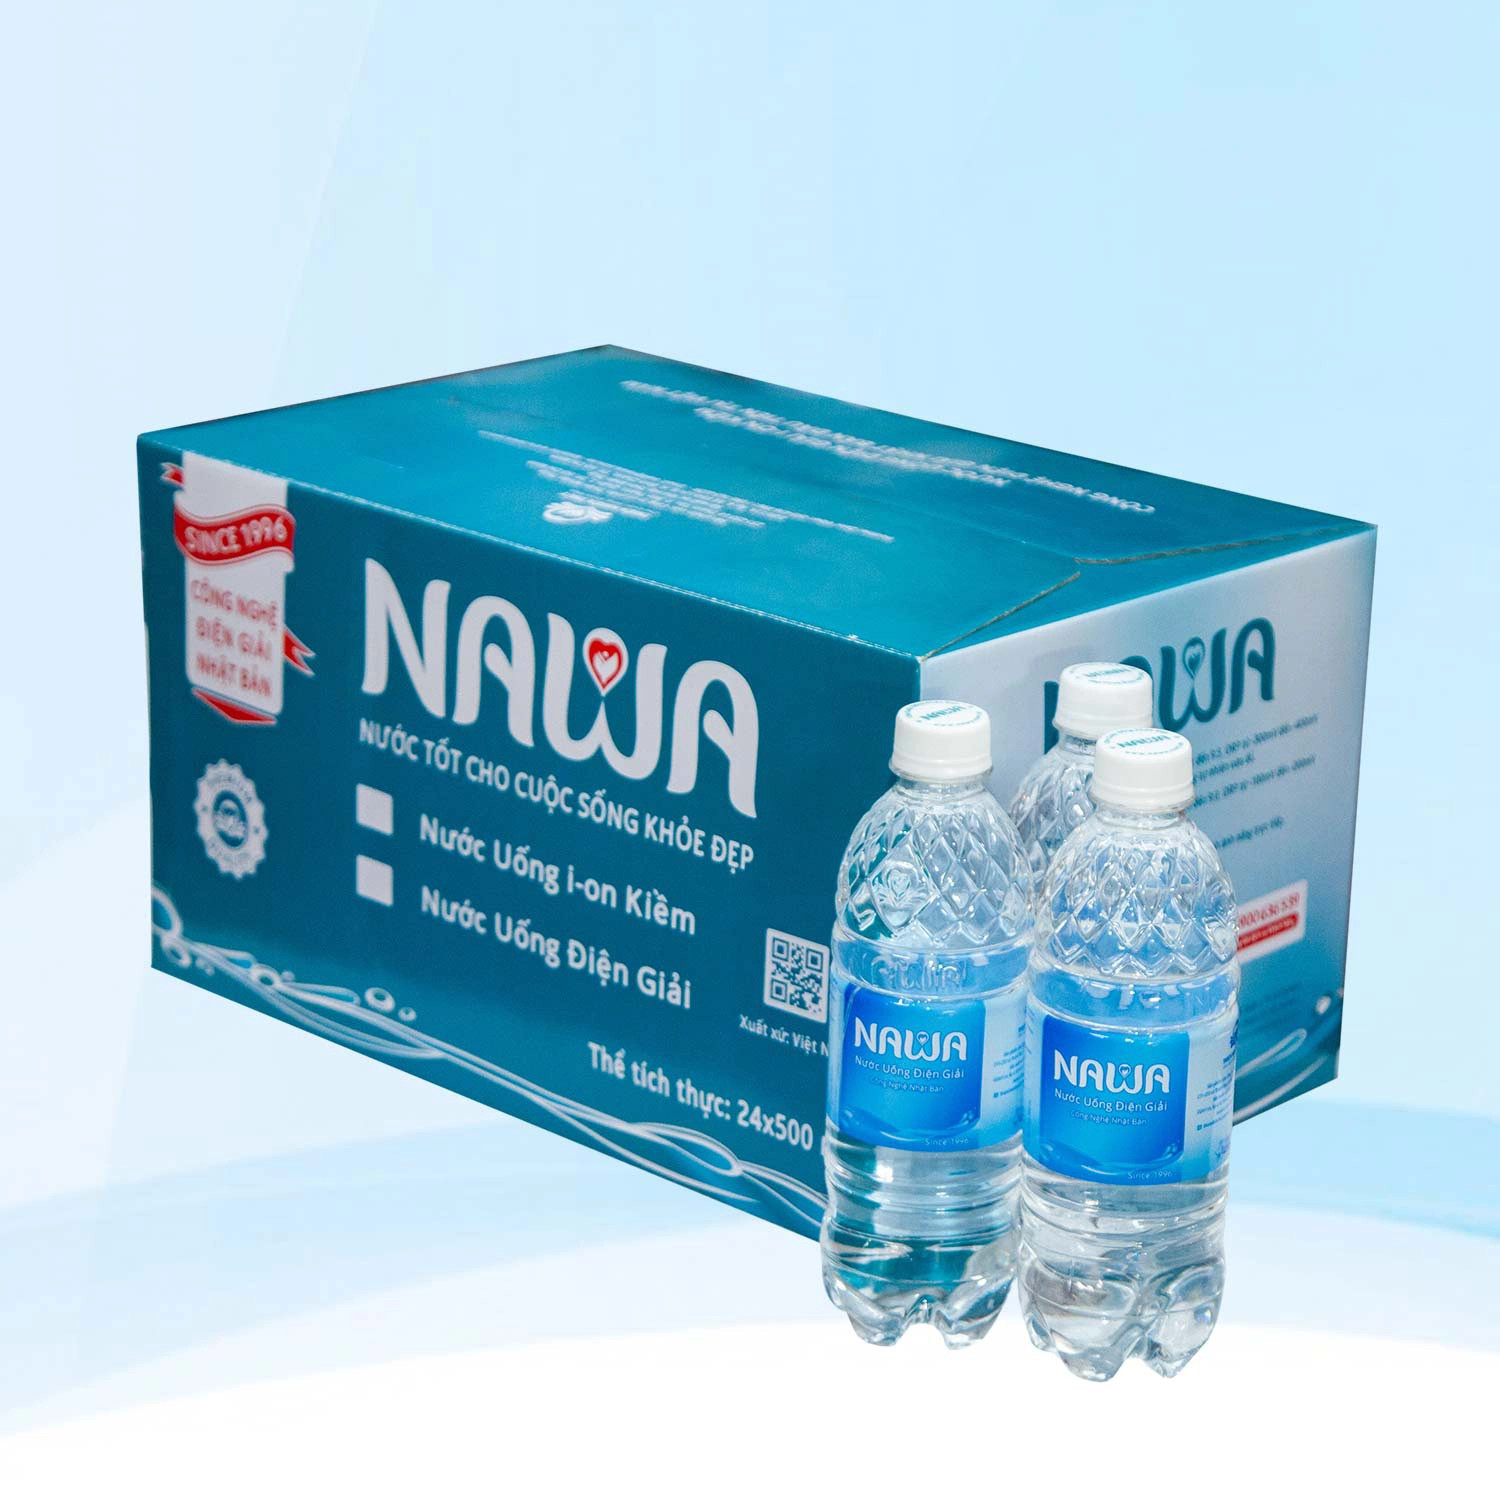 Nước uống điện giải NAWA 500ml